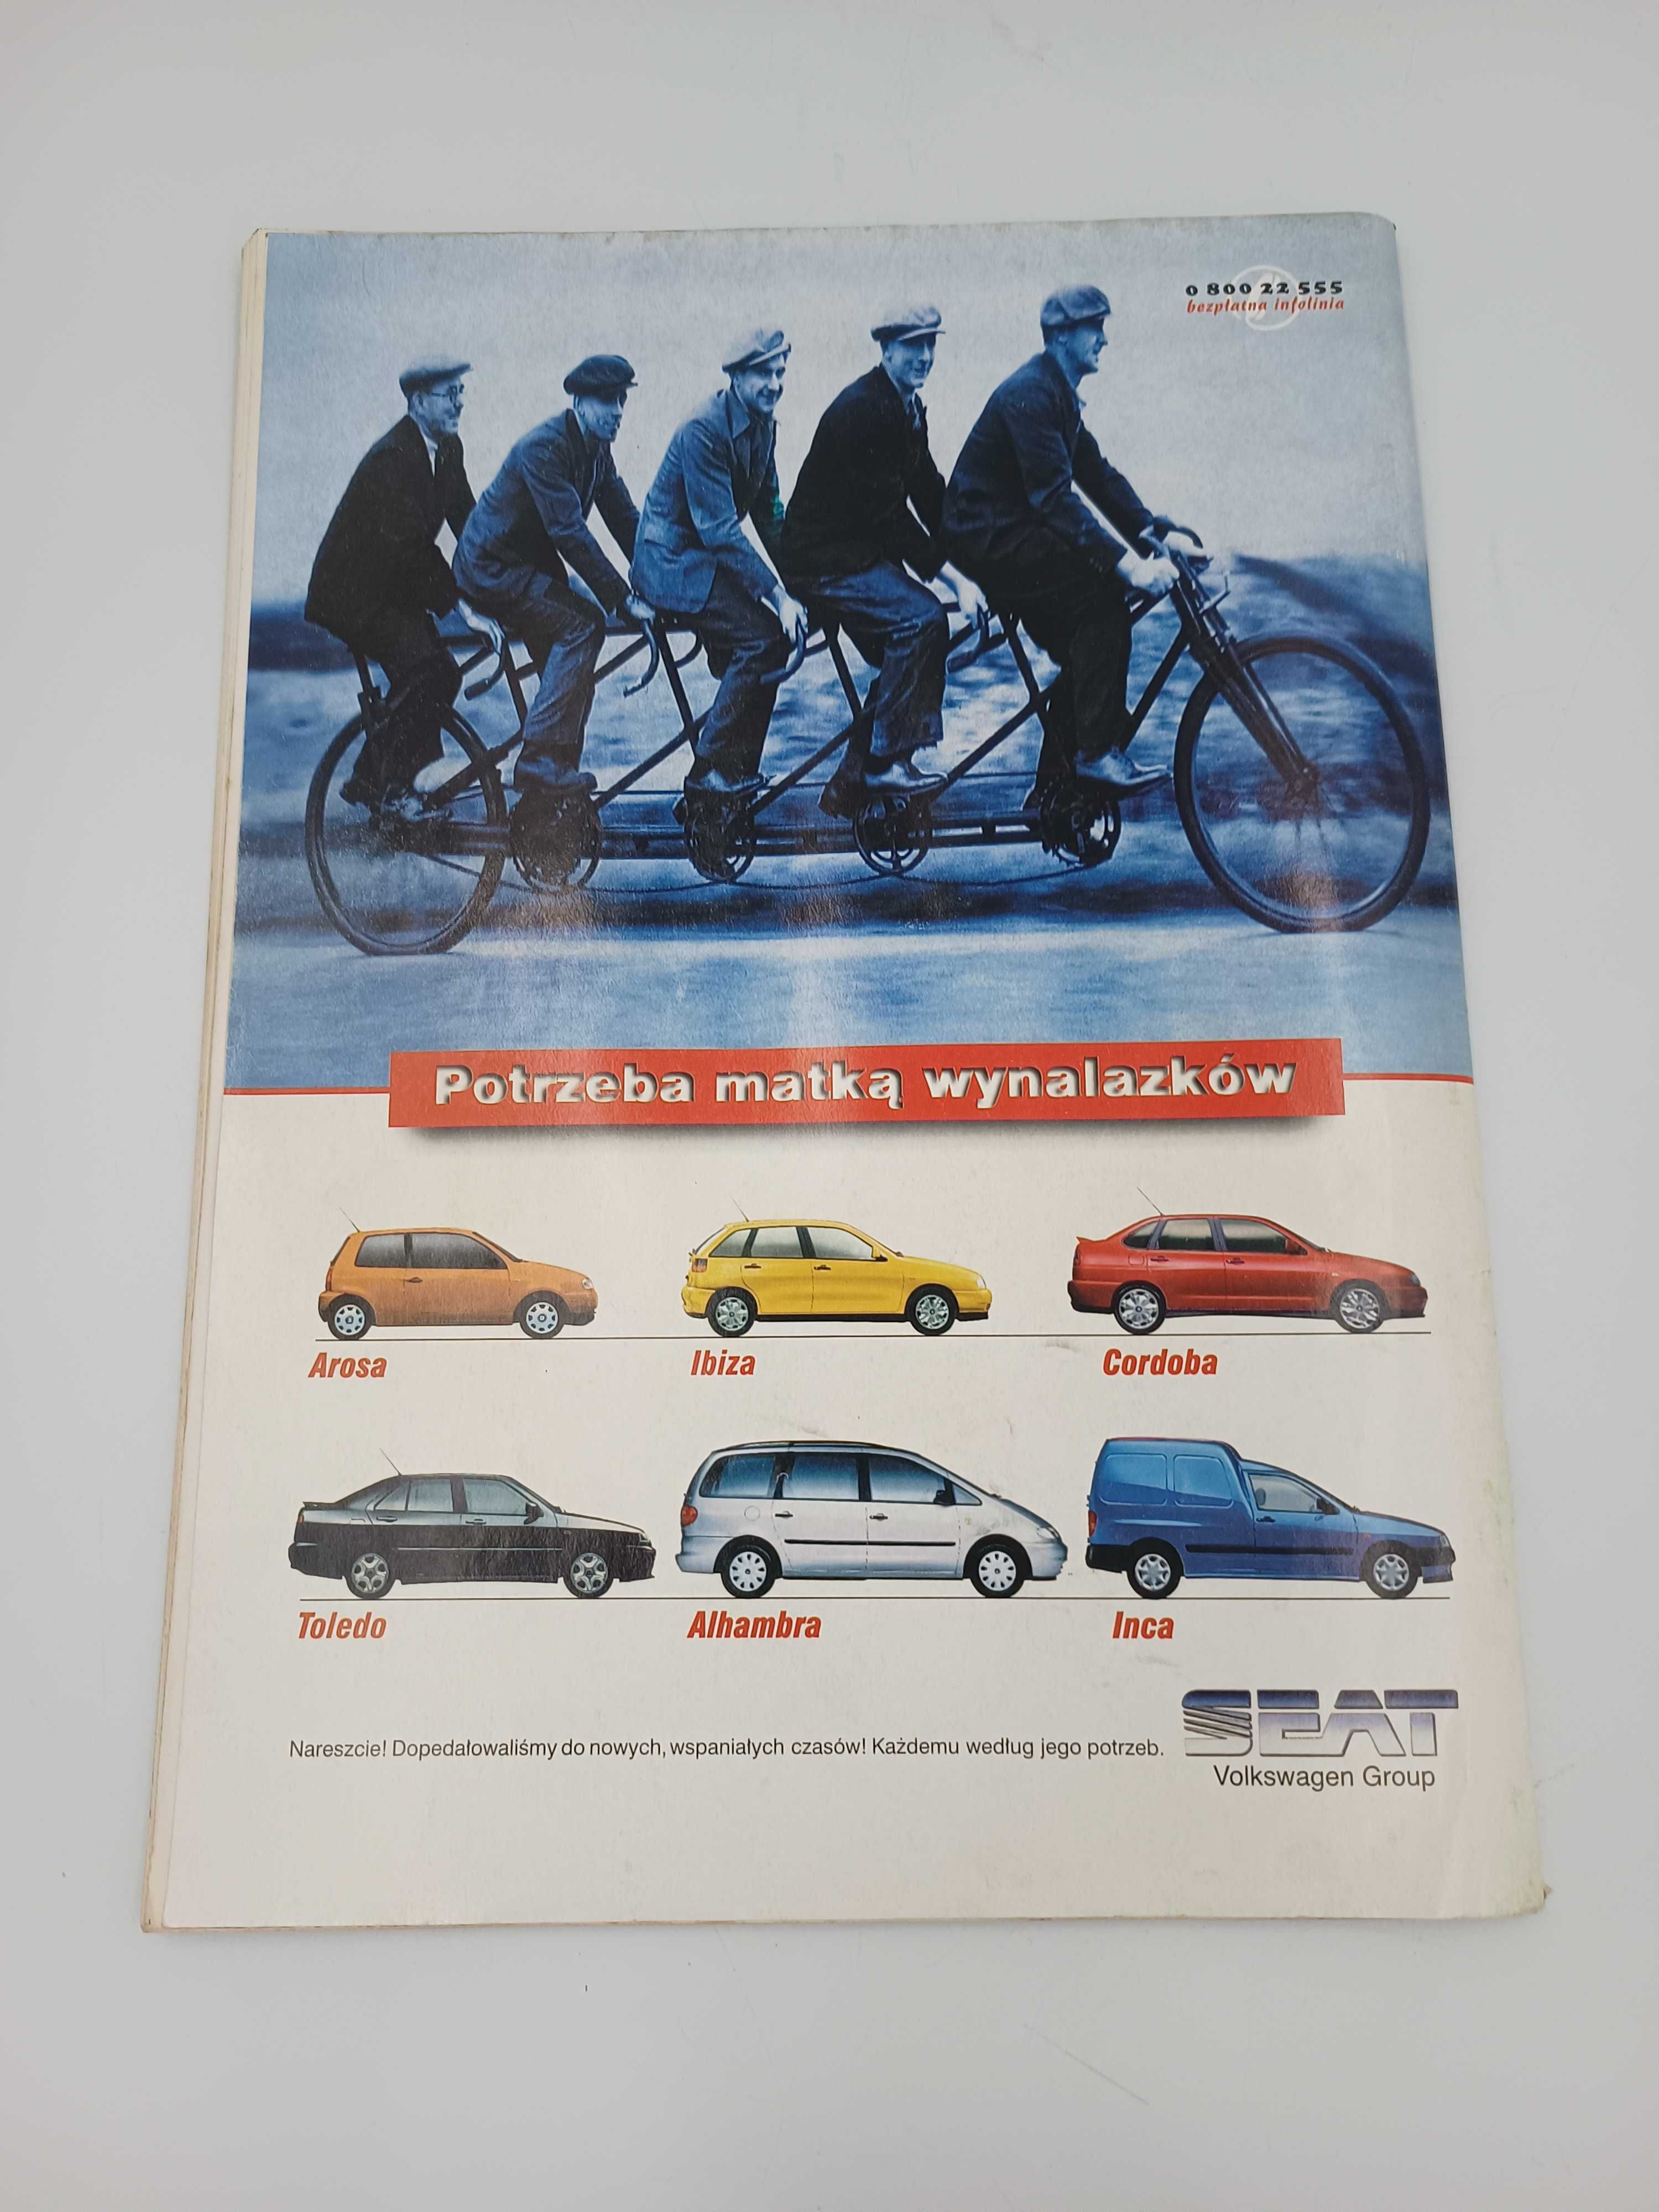 Auto Świat katalog 98 czasopismo motoryzacyjne